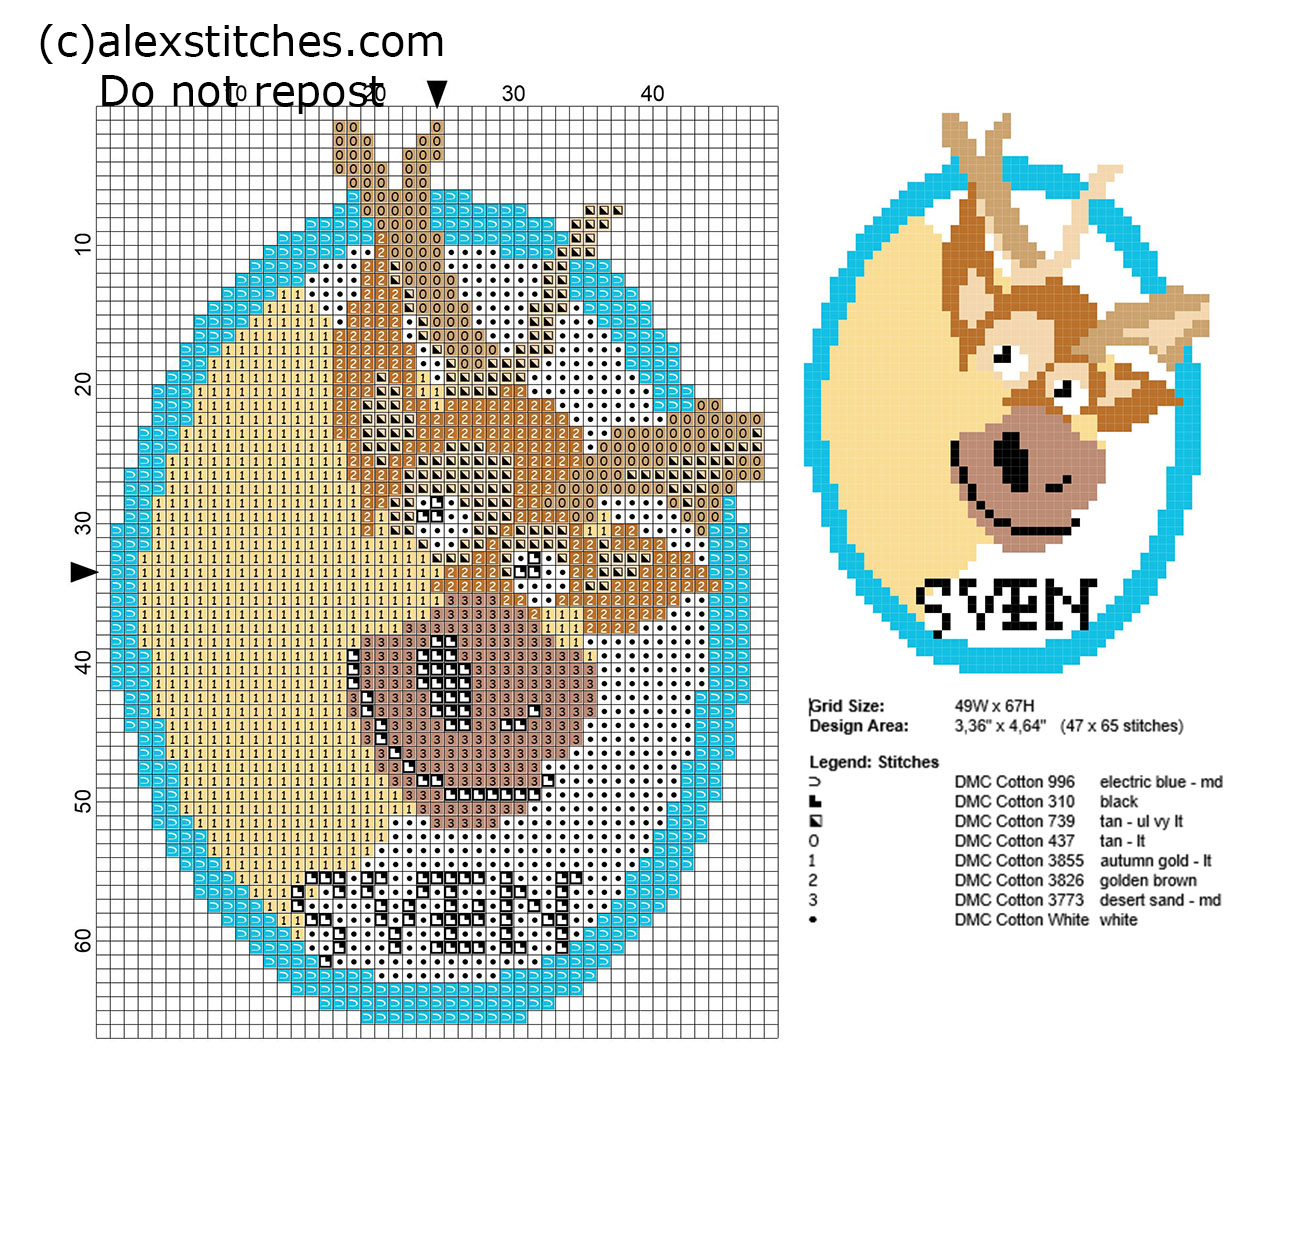 Frozen reindeer Sven small free cross stitch pattern 47 x 65 stitches 8 DMC threads